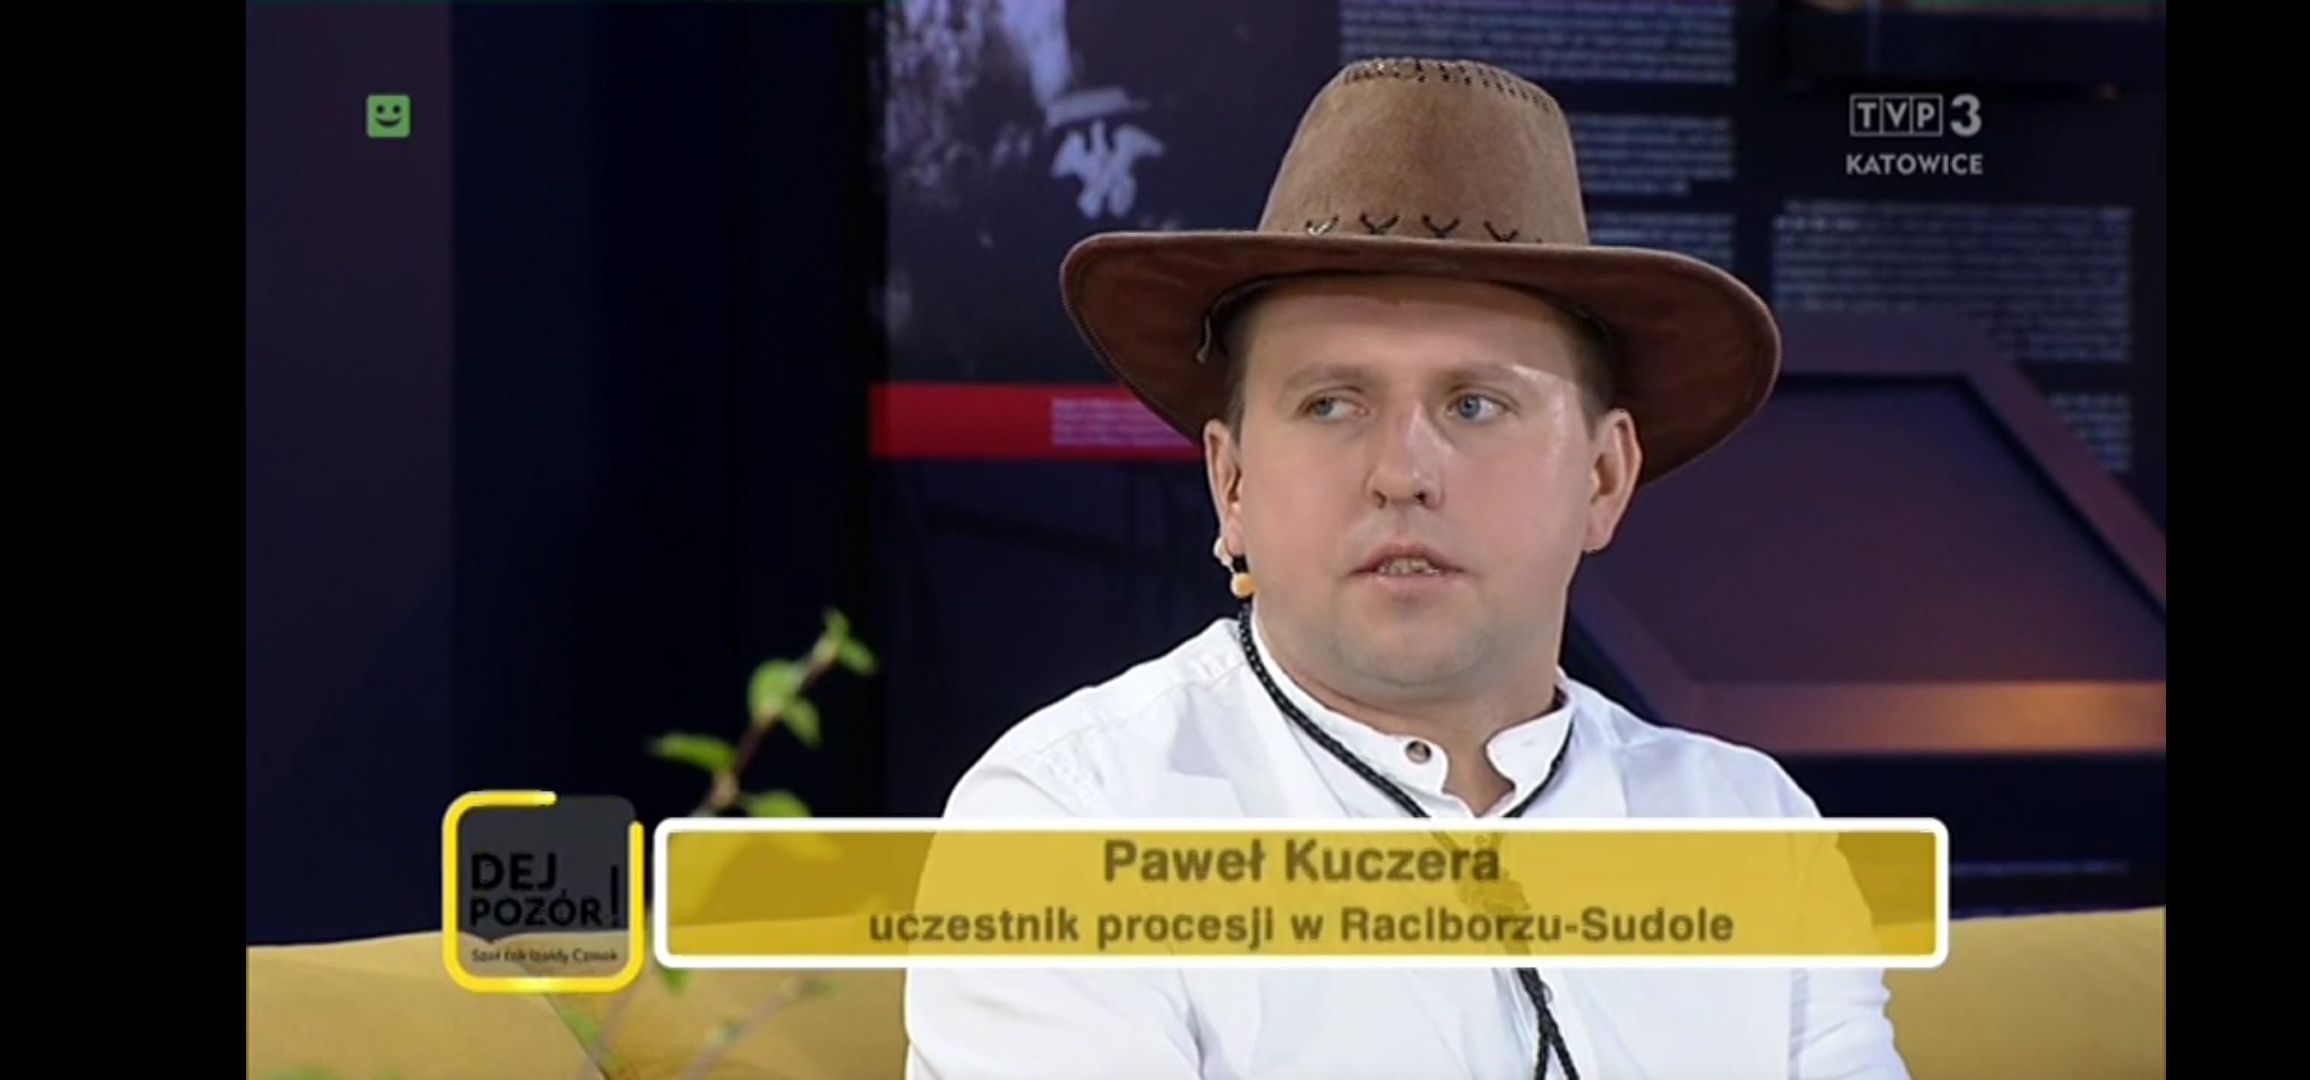 Paweł Kuczera zaczął jeździć w procesji kiedy miał 10 lat